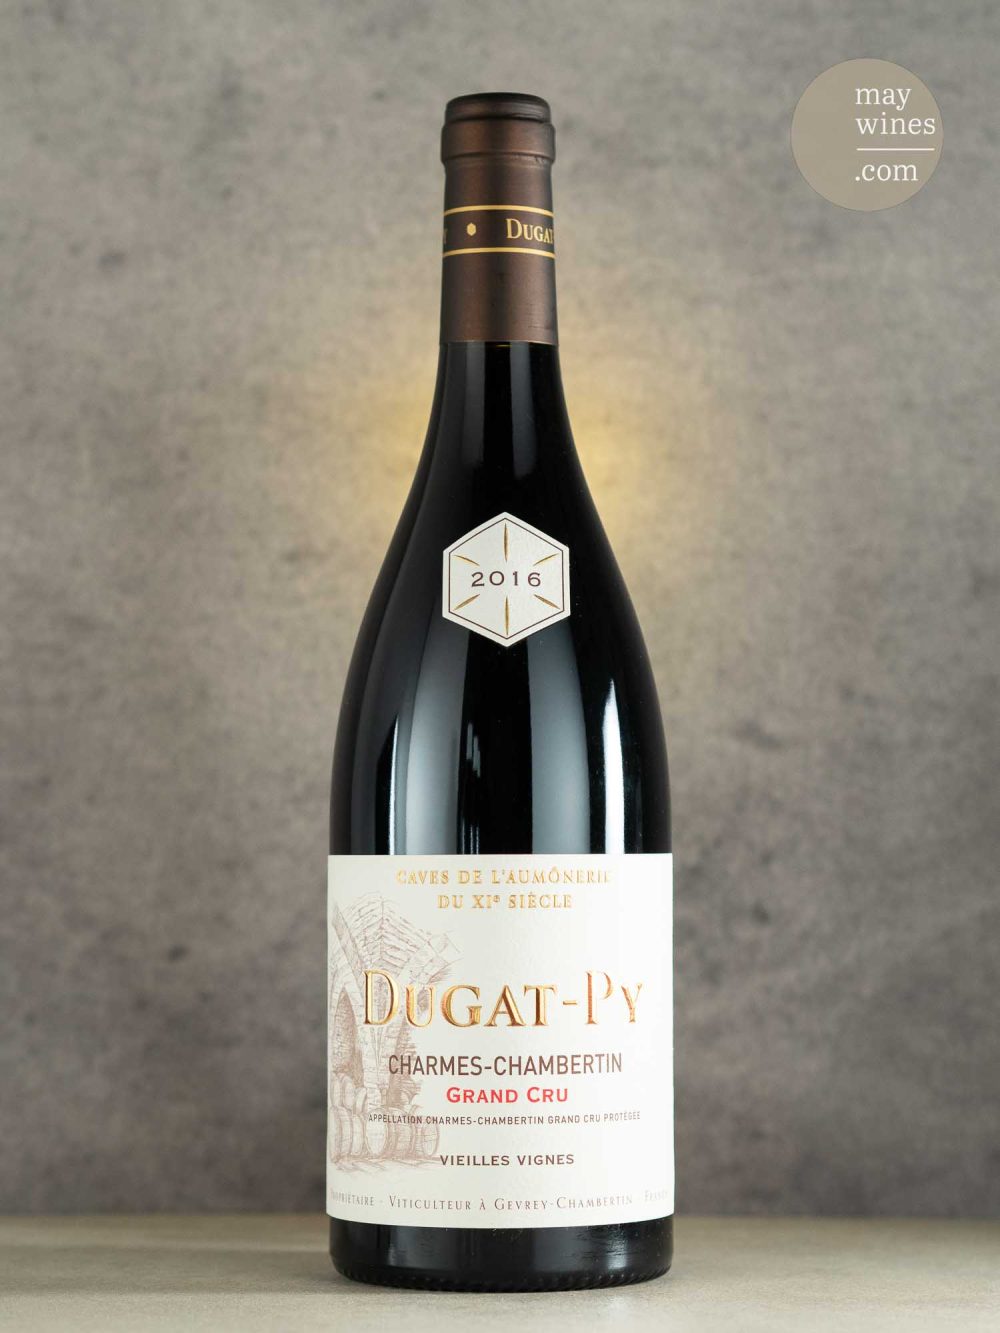 May Wines – Rotwein – 2016 Charmes-Chambertin Grand Cru - Domaine Dugat-Py